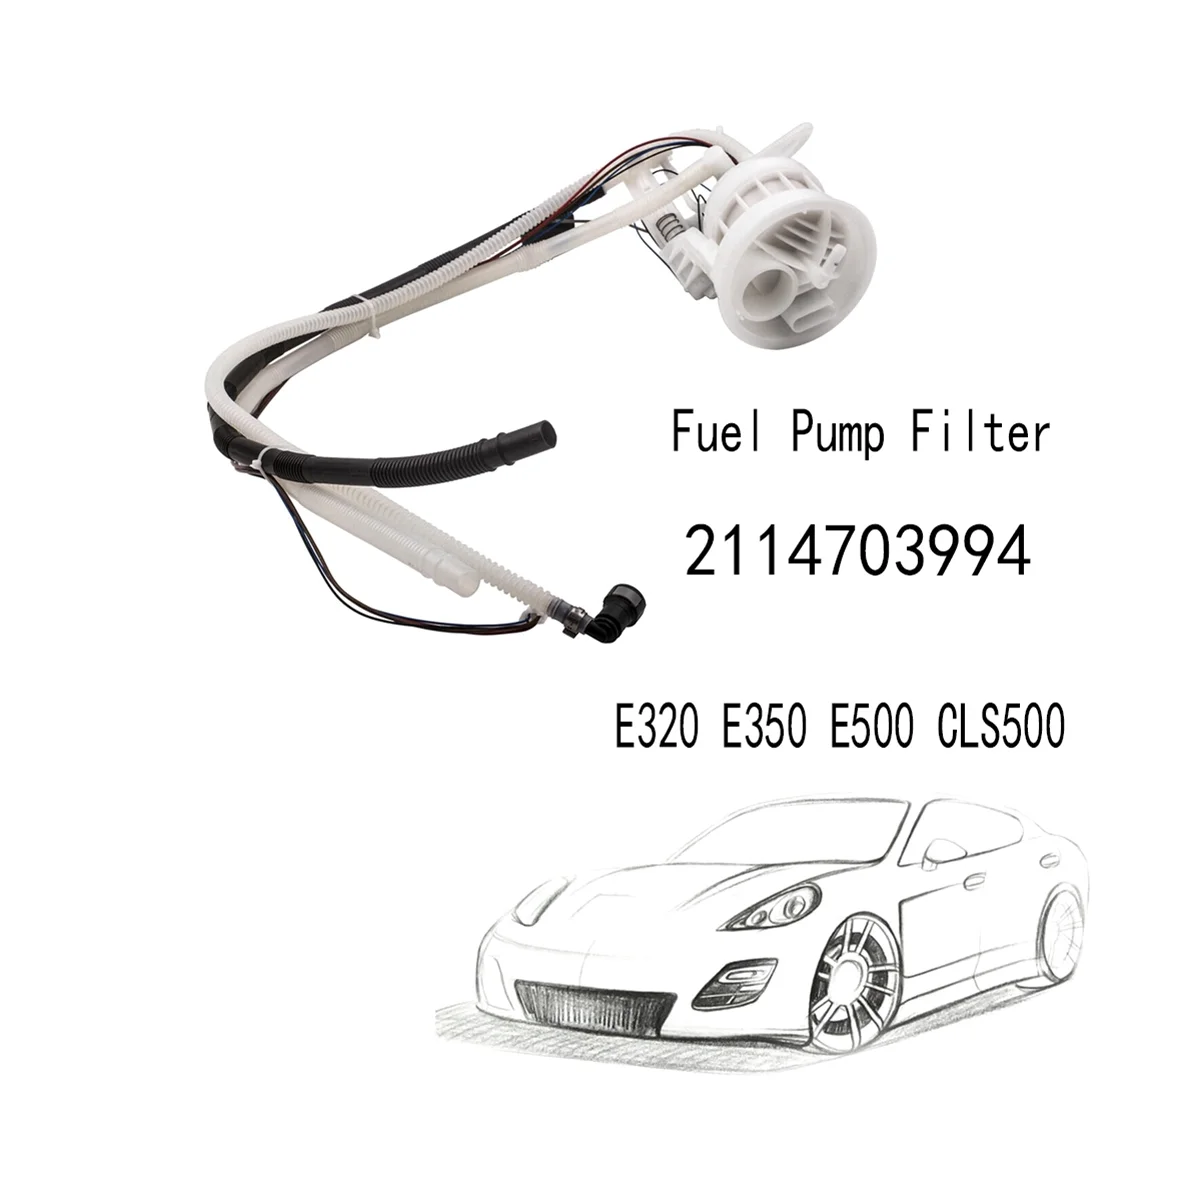 Фильтр топливного насоса для Mercedes Benz W211 E320 E350 E500 CLS500 2114703994 . ' - ' . 3